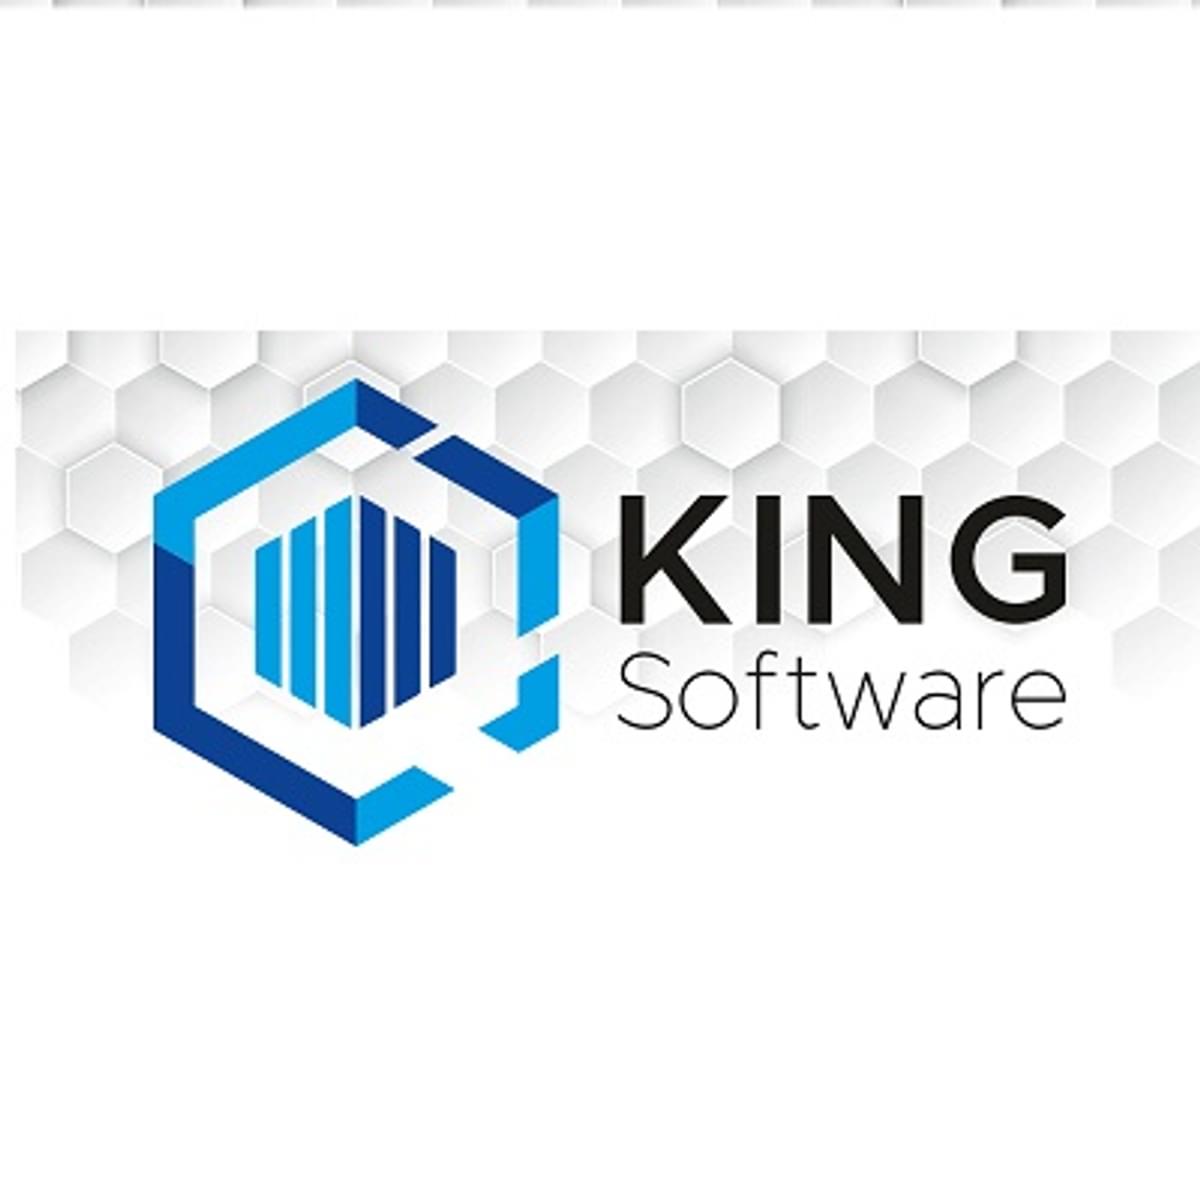 KING Software is de nieuwe naam voor MUIS Software image